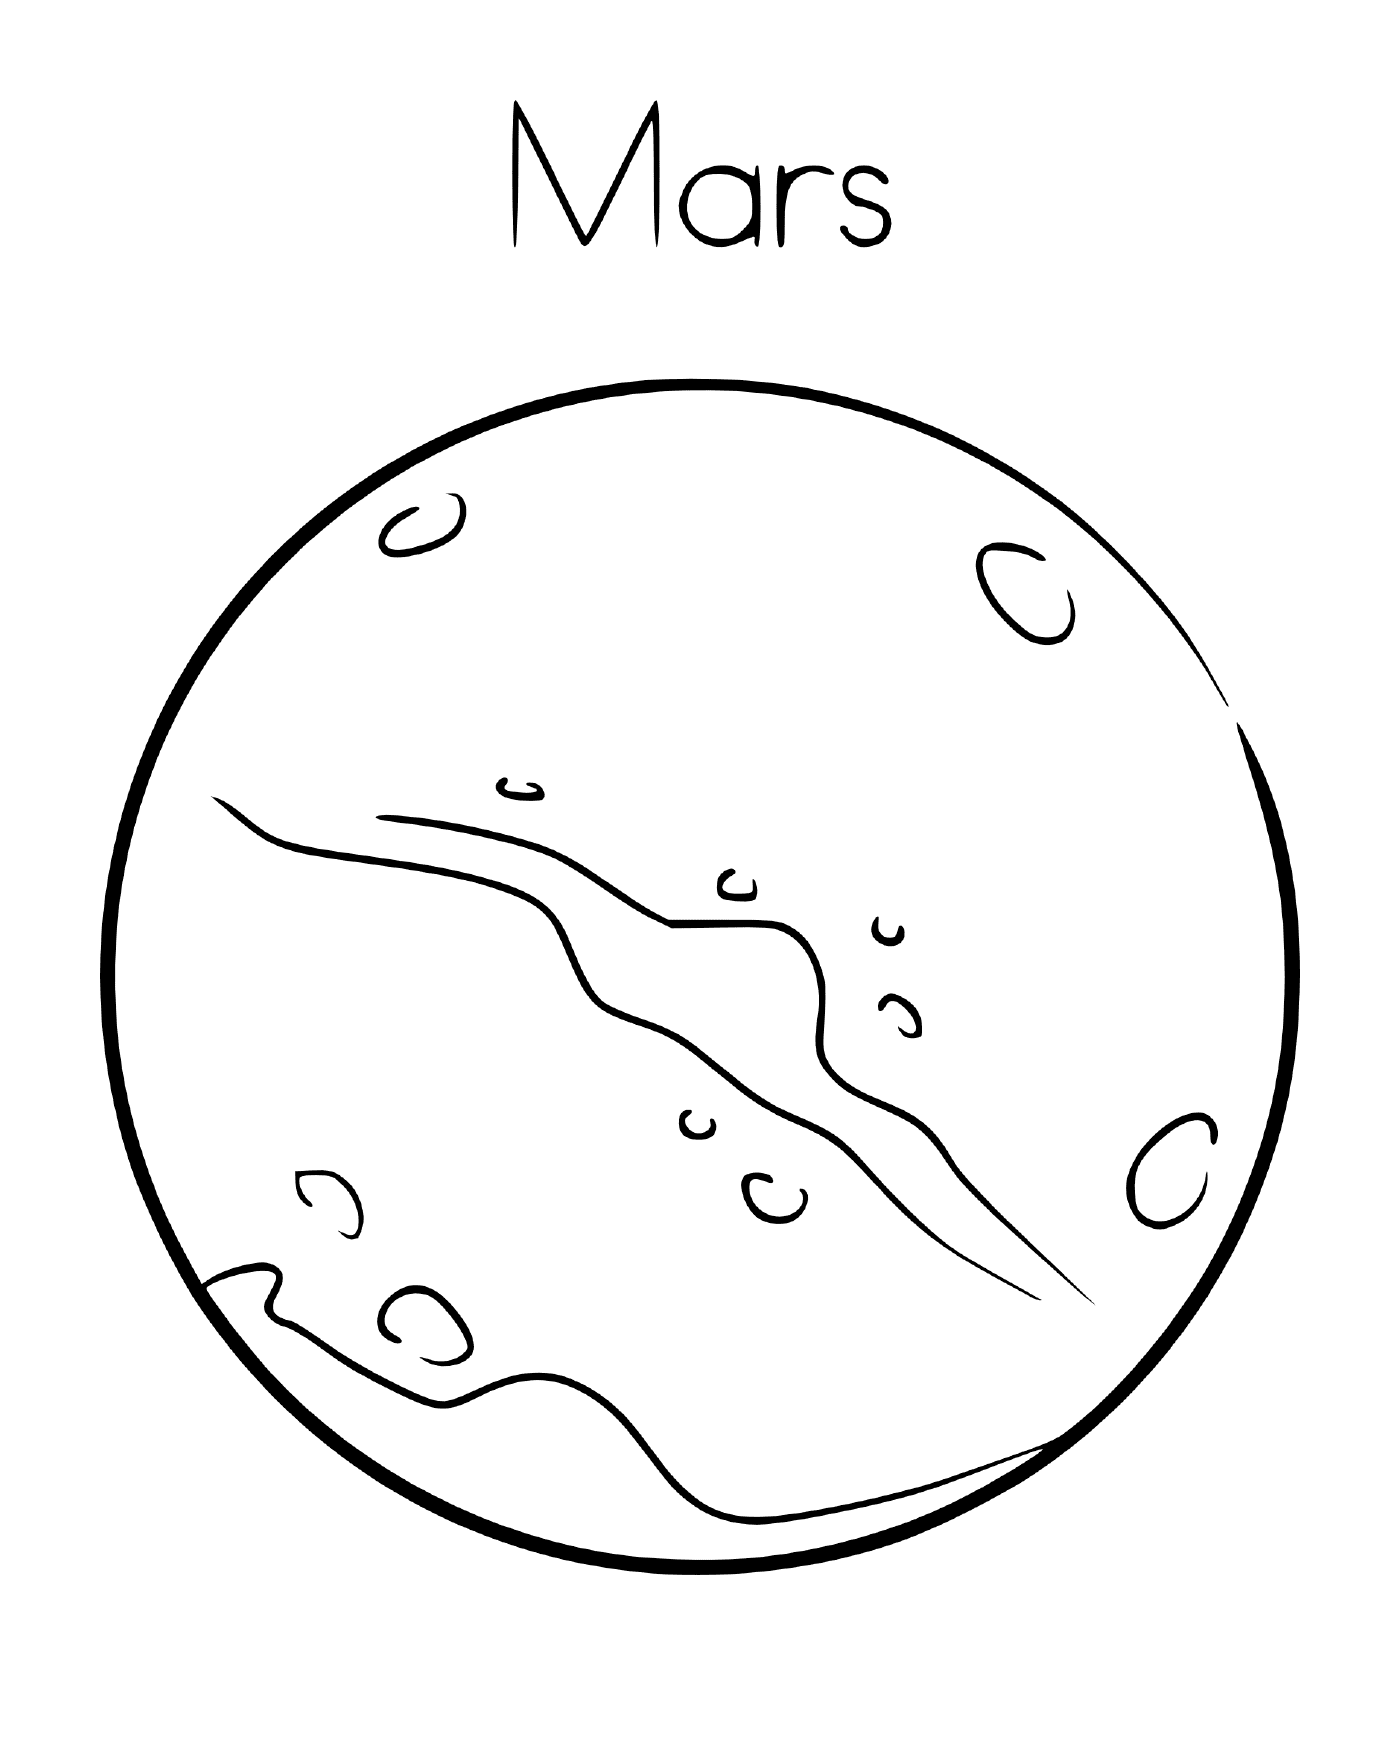  Pianeta Marte con i suoi crateri 